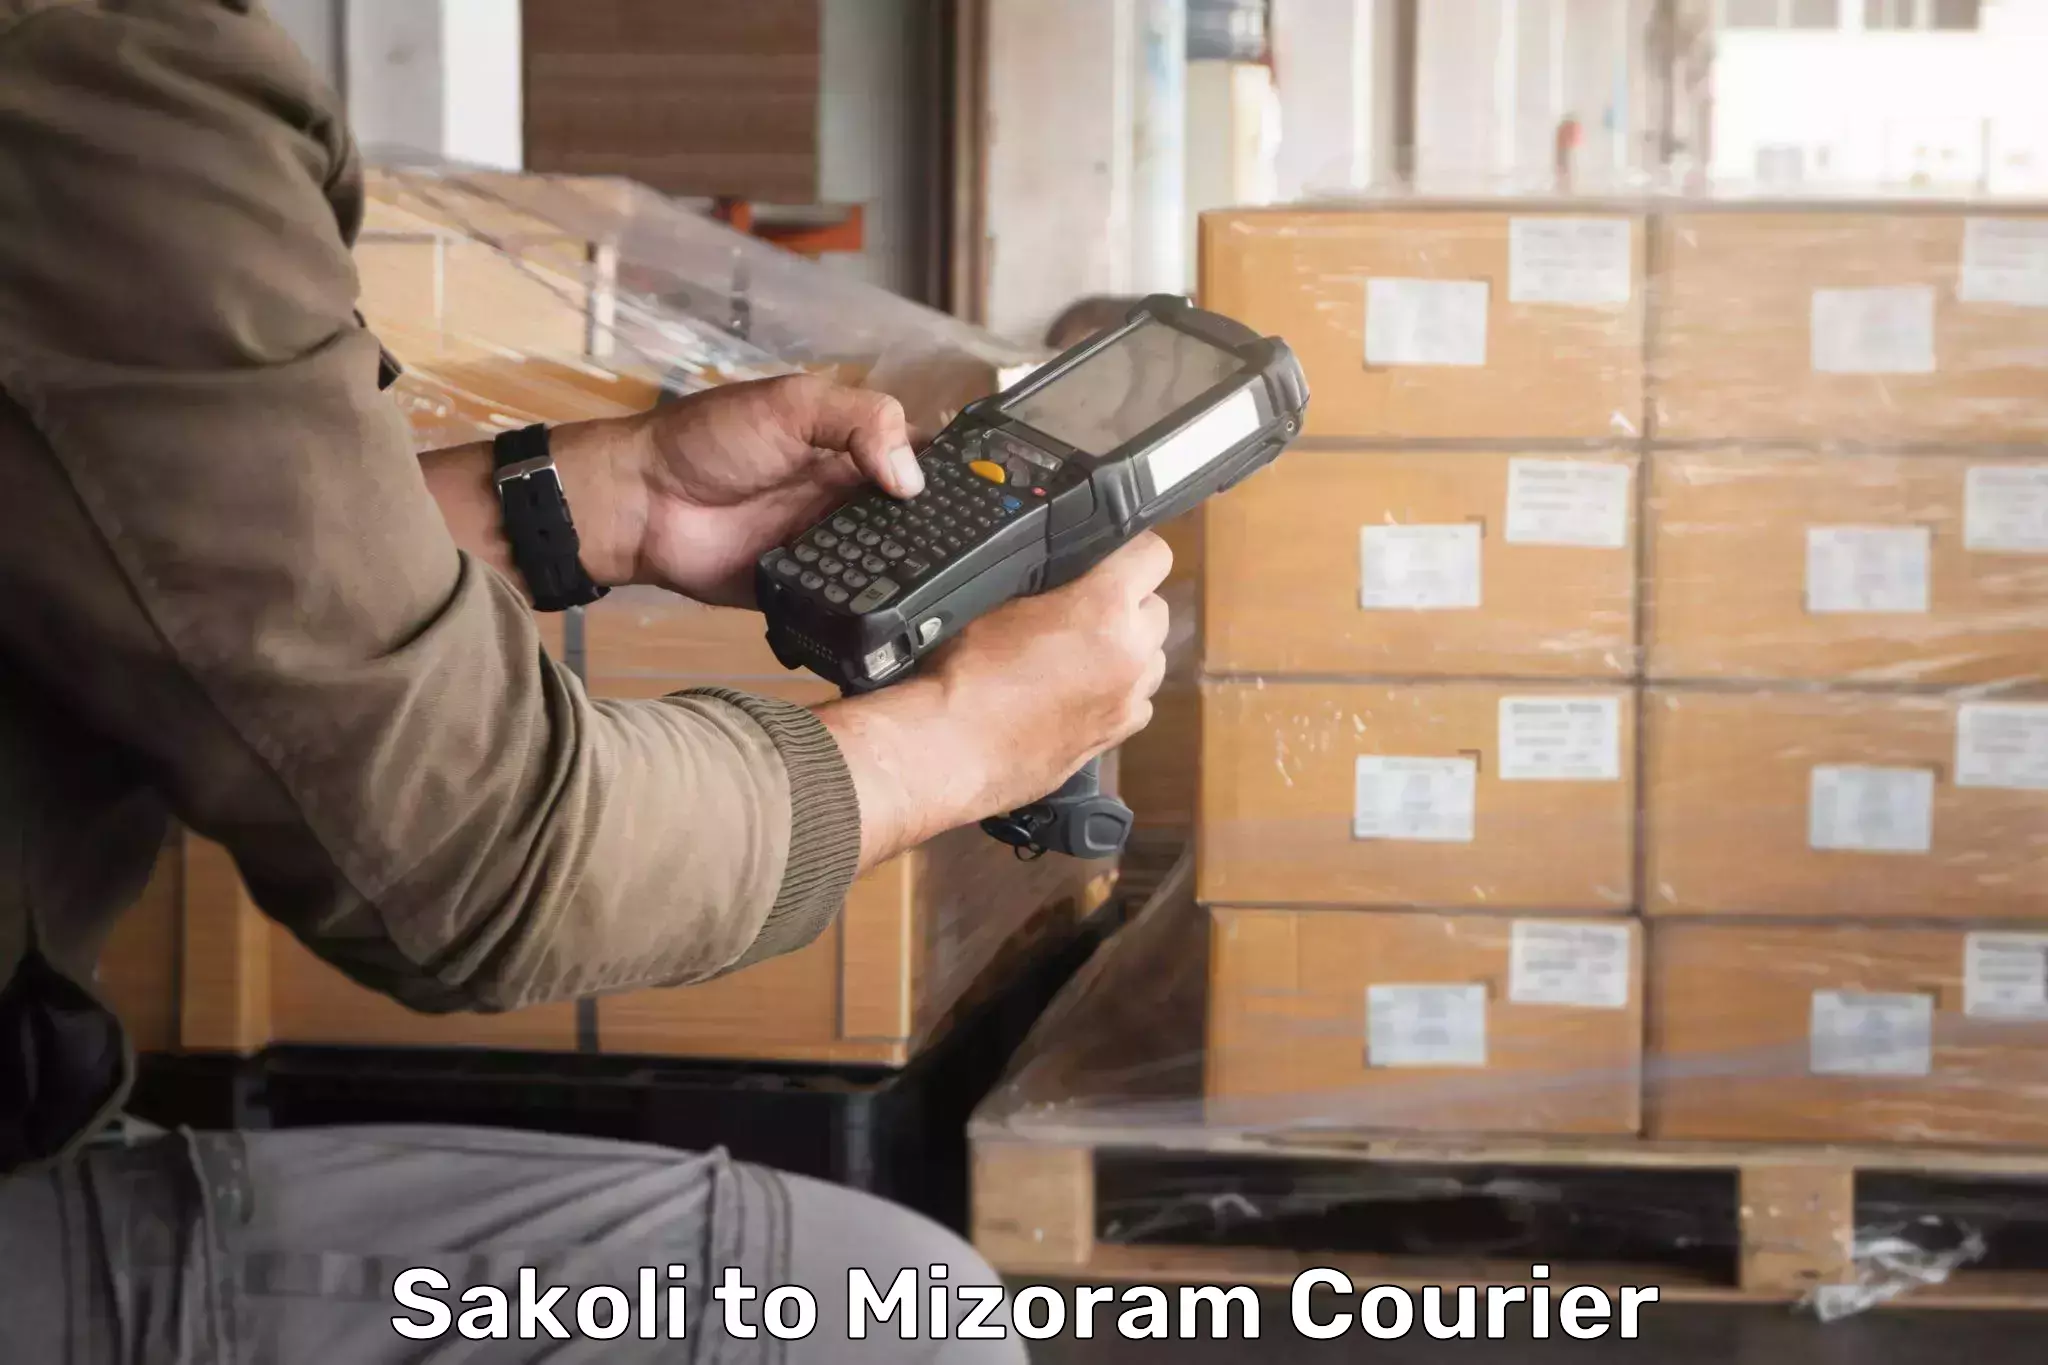 Premium courier services Sakoli to Aizawl